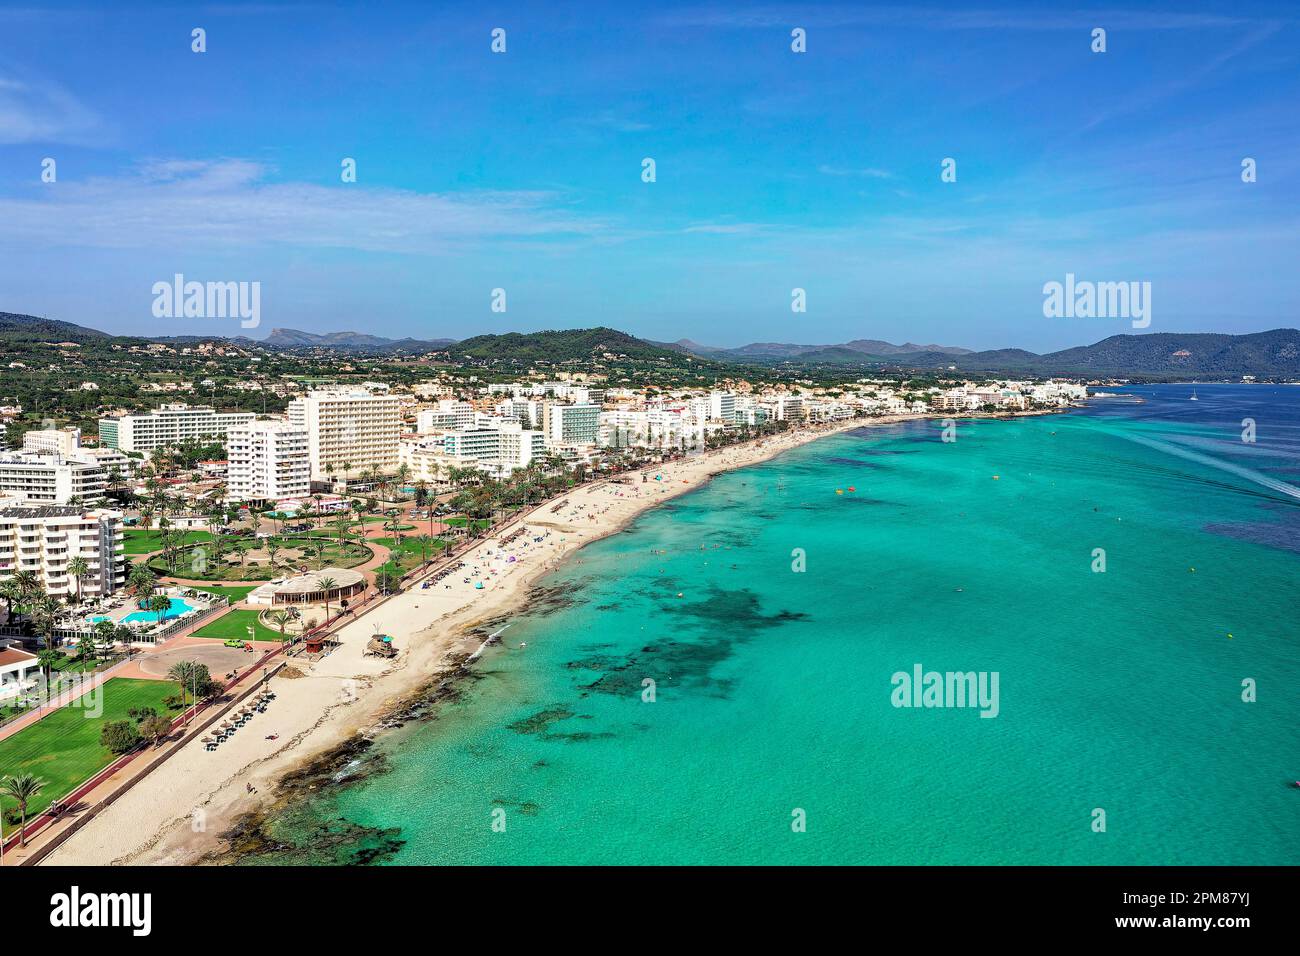 Spagna, Isole Baleari, Maiorca, Cala Millor, spiaggia Cala Millor, spiaggia di sabbia bianca fine con acqua limpida e trasparente, delimitata da catene alberghiere (vista aerea) Foto Stock